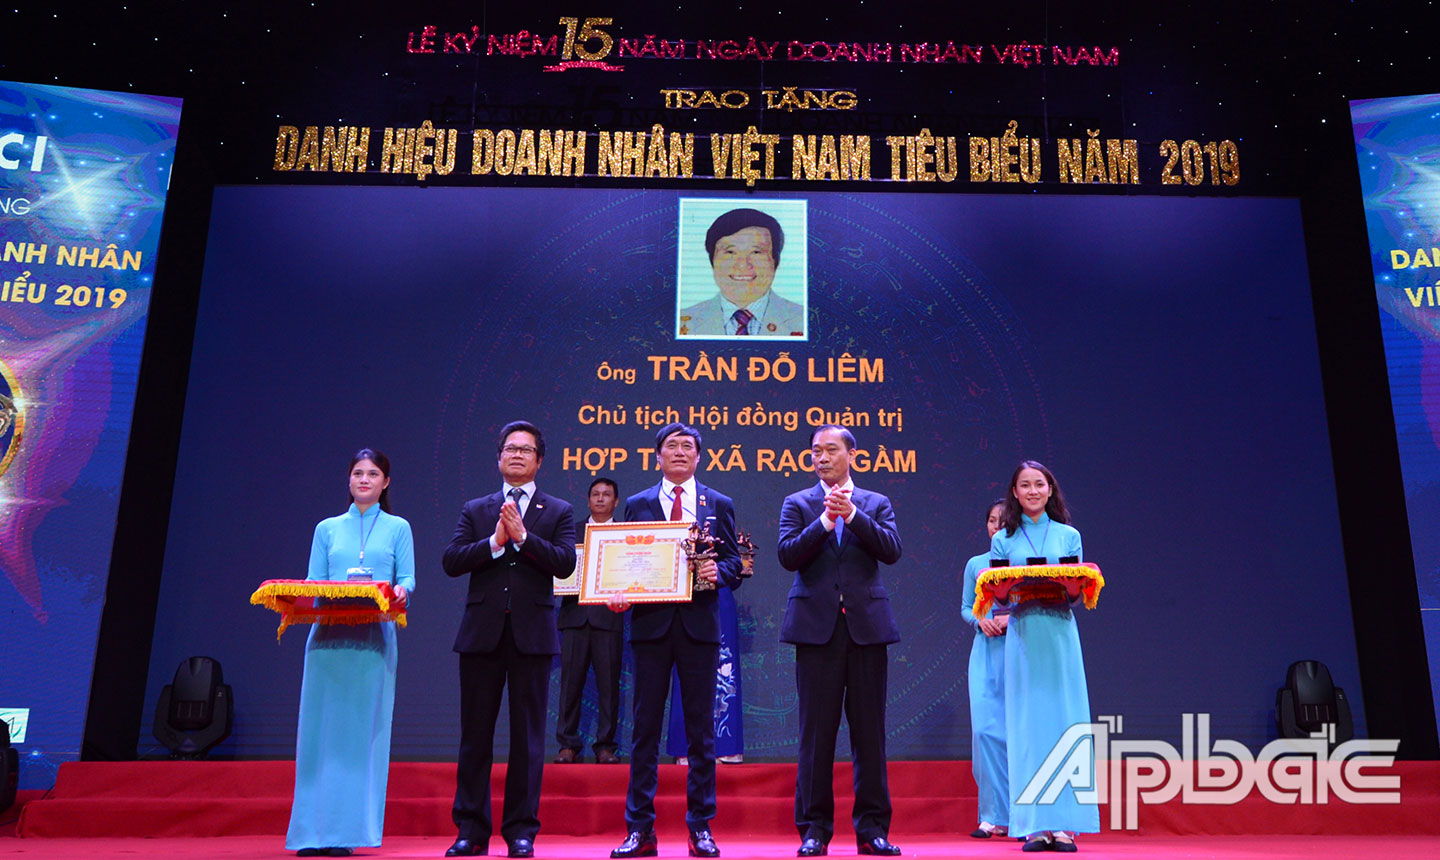  Ông Trần Đỗ Liêm nhận danh hiệu Doanh nhân Việt Nam tiêu biểu năm 2019.